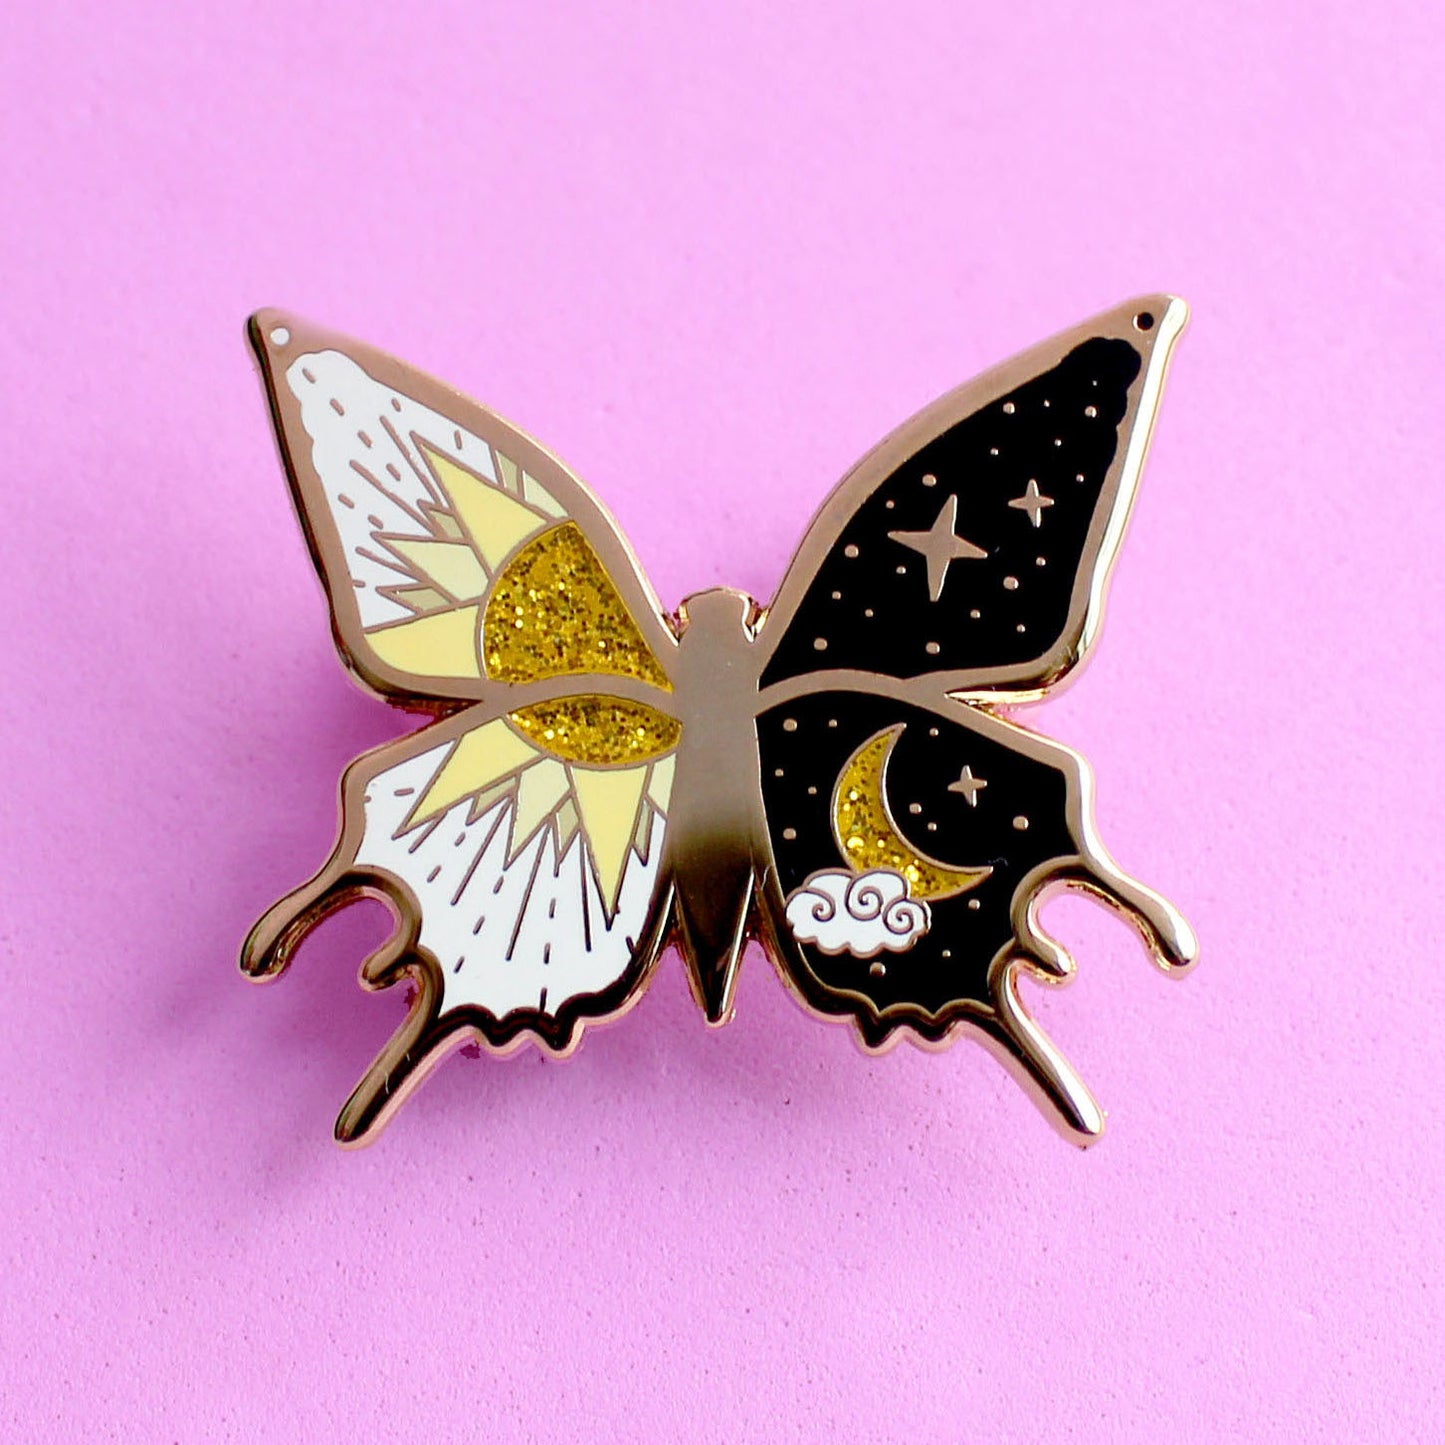 Yin and Yang Butterfly Enamel Pin